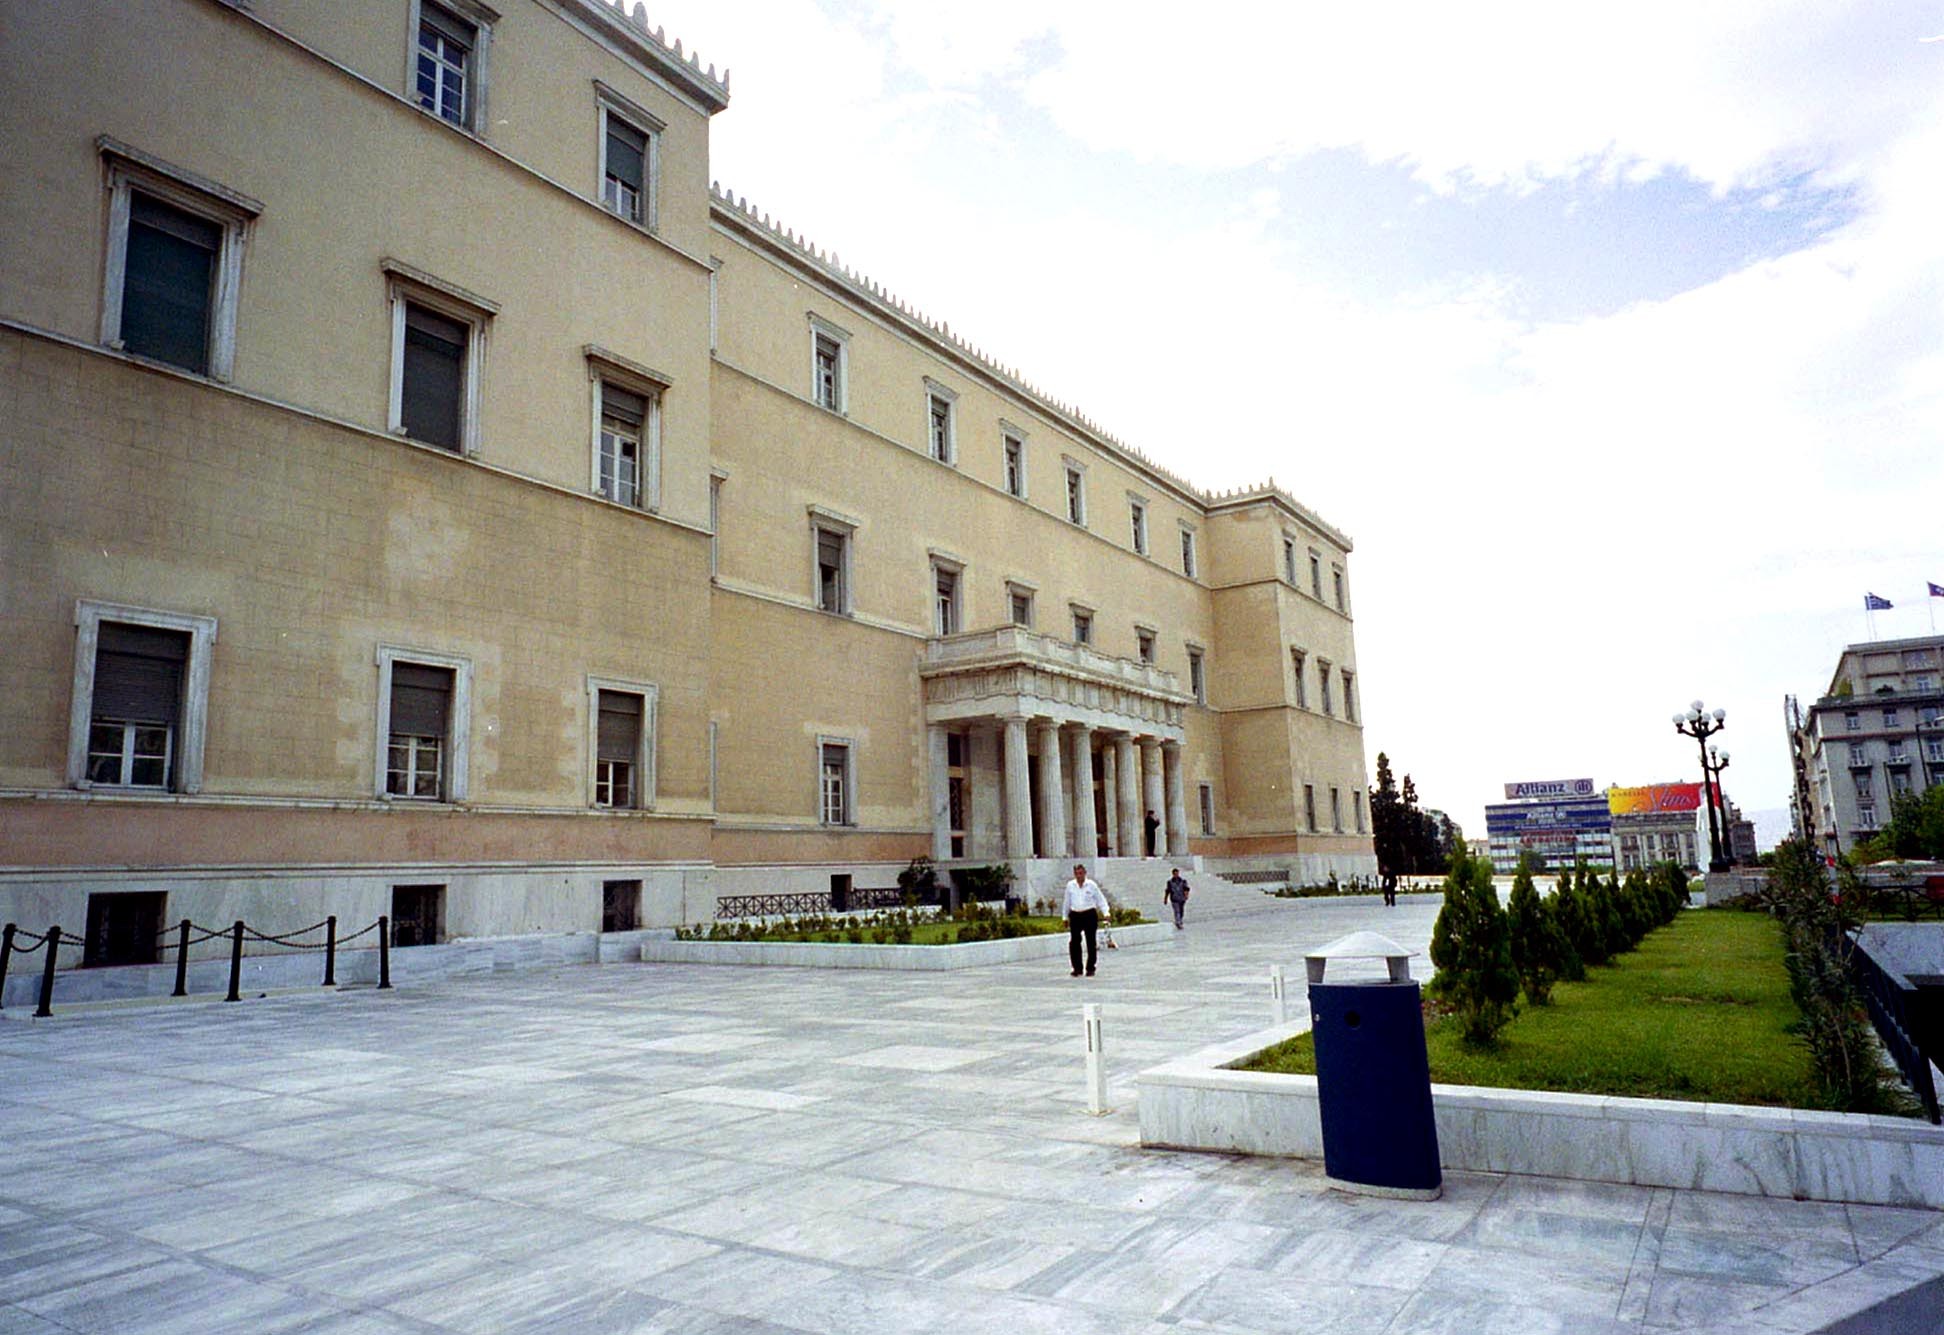 Τεράστιο το ποσοστό των κομμάτων εκτός Βουλής – 1/6 Έλληνες δεν εκπροσωπείται